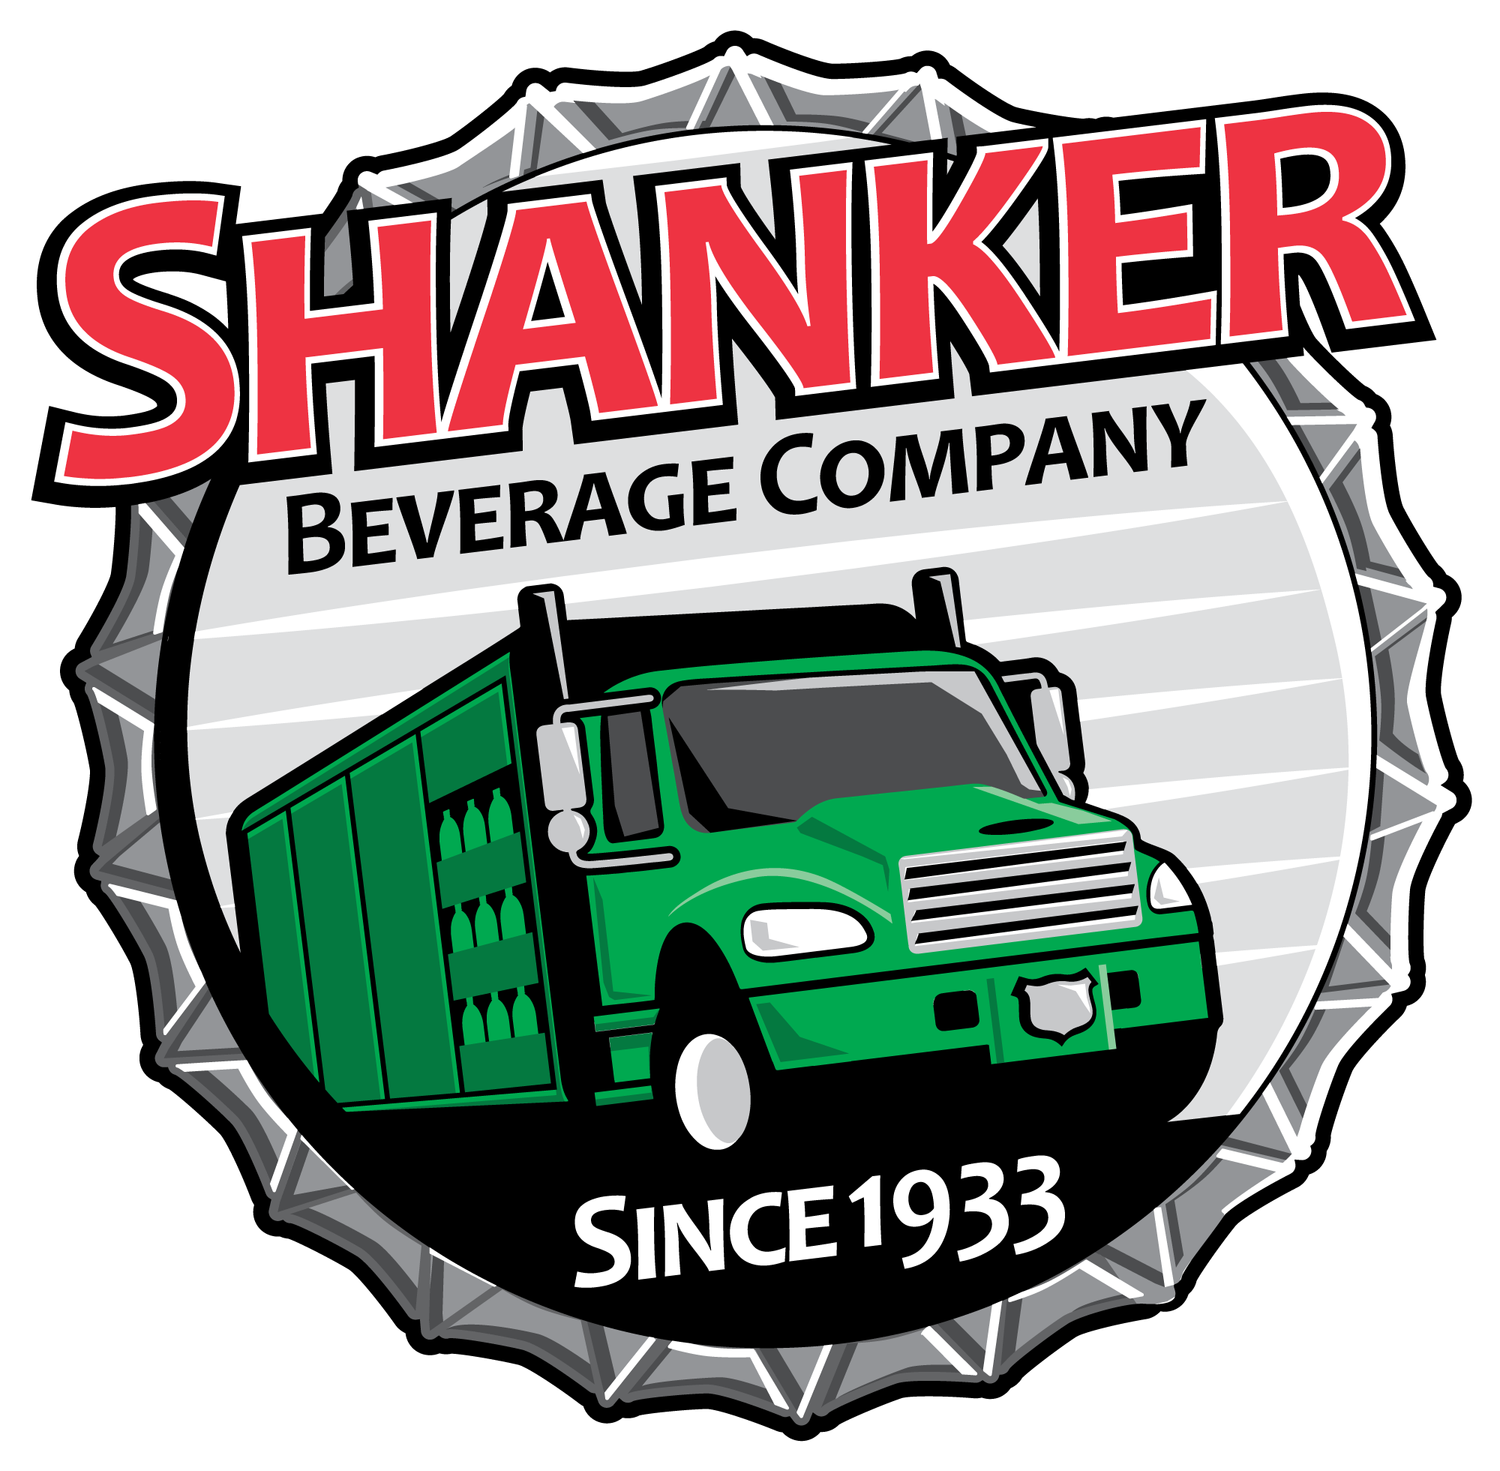 Shanker Beverage Company